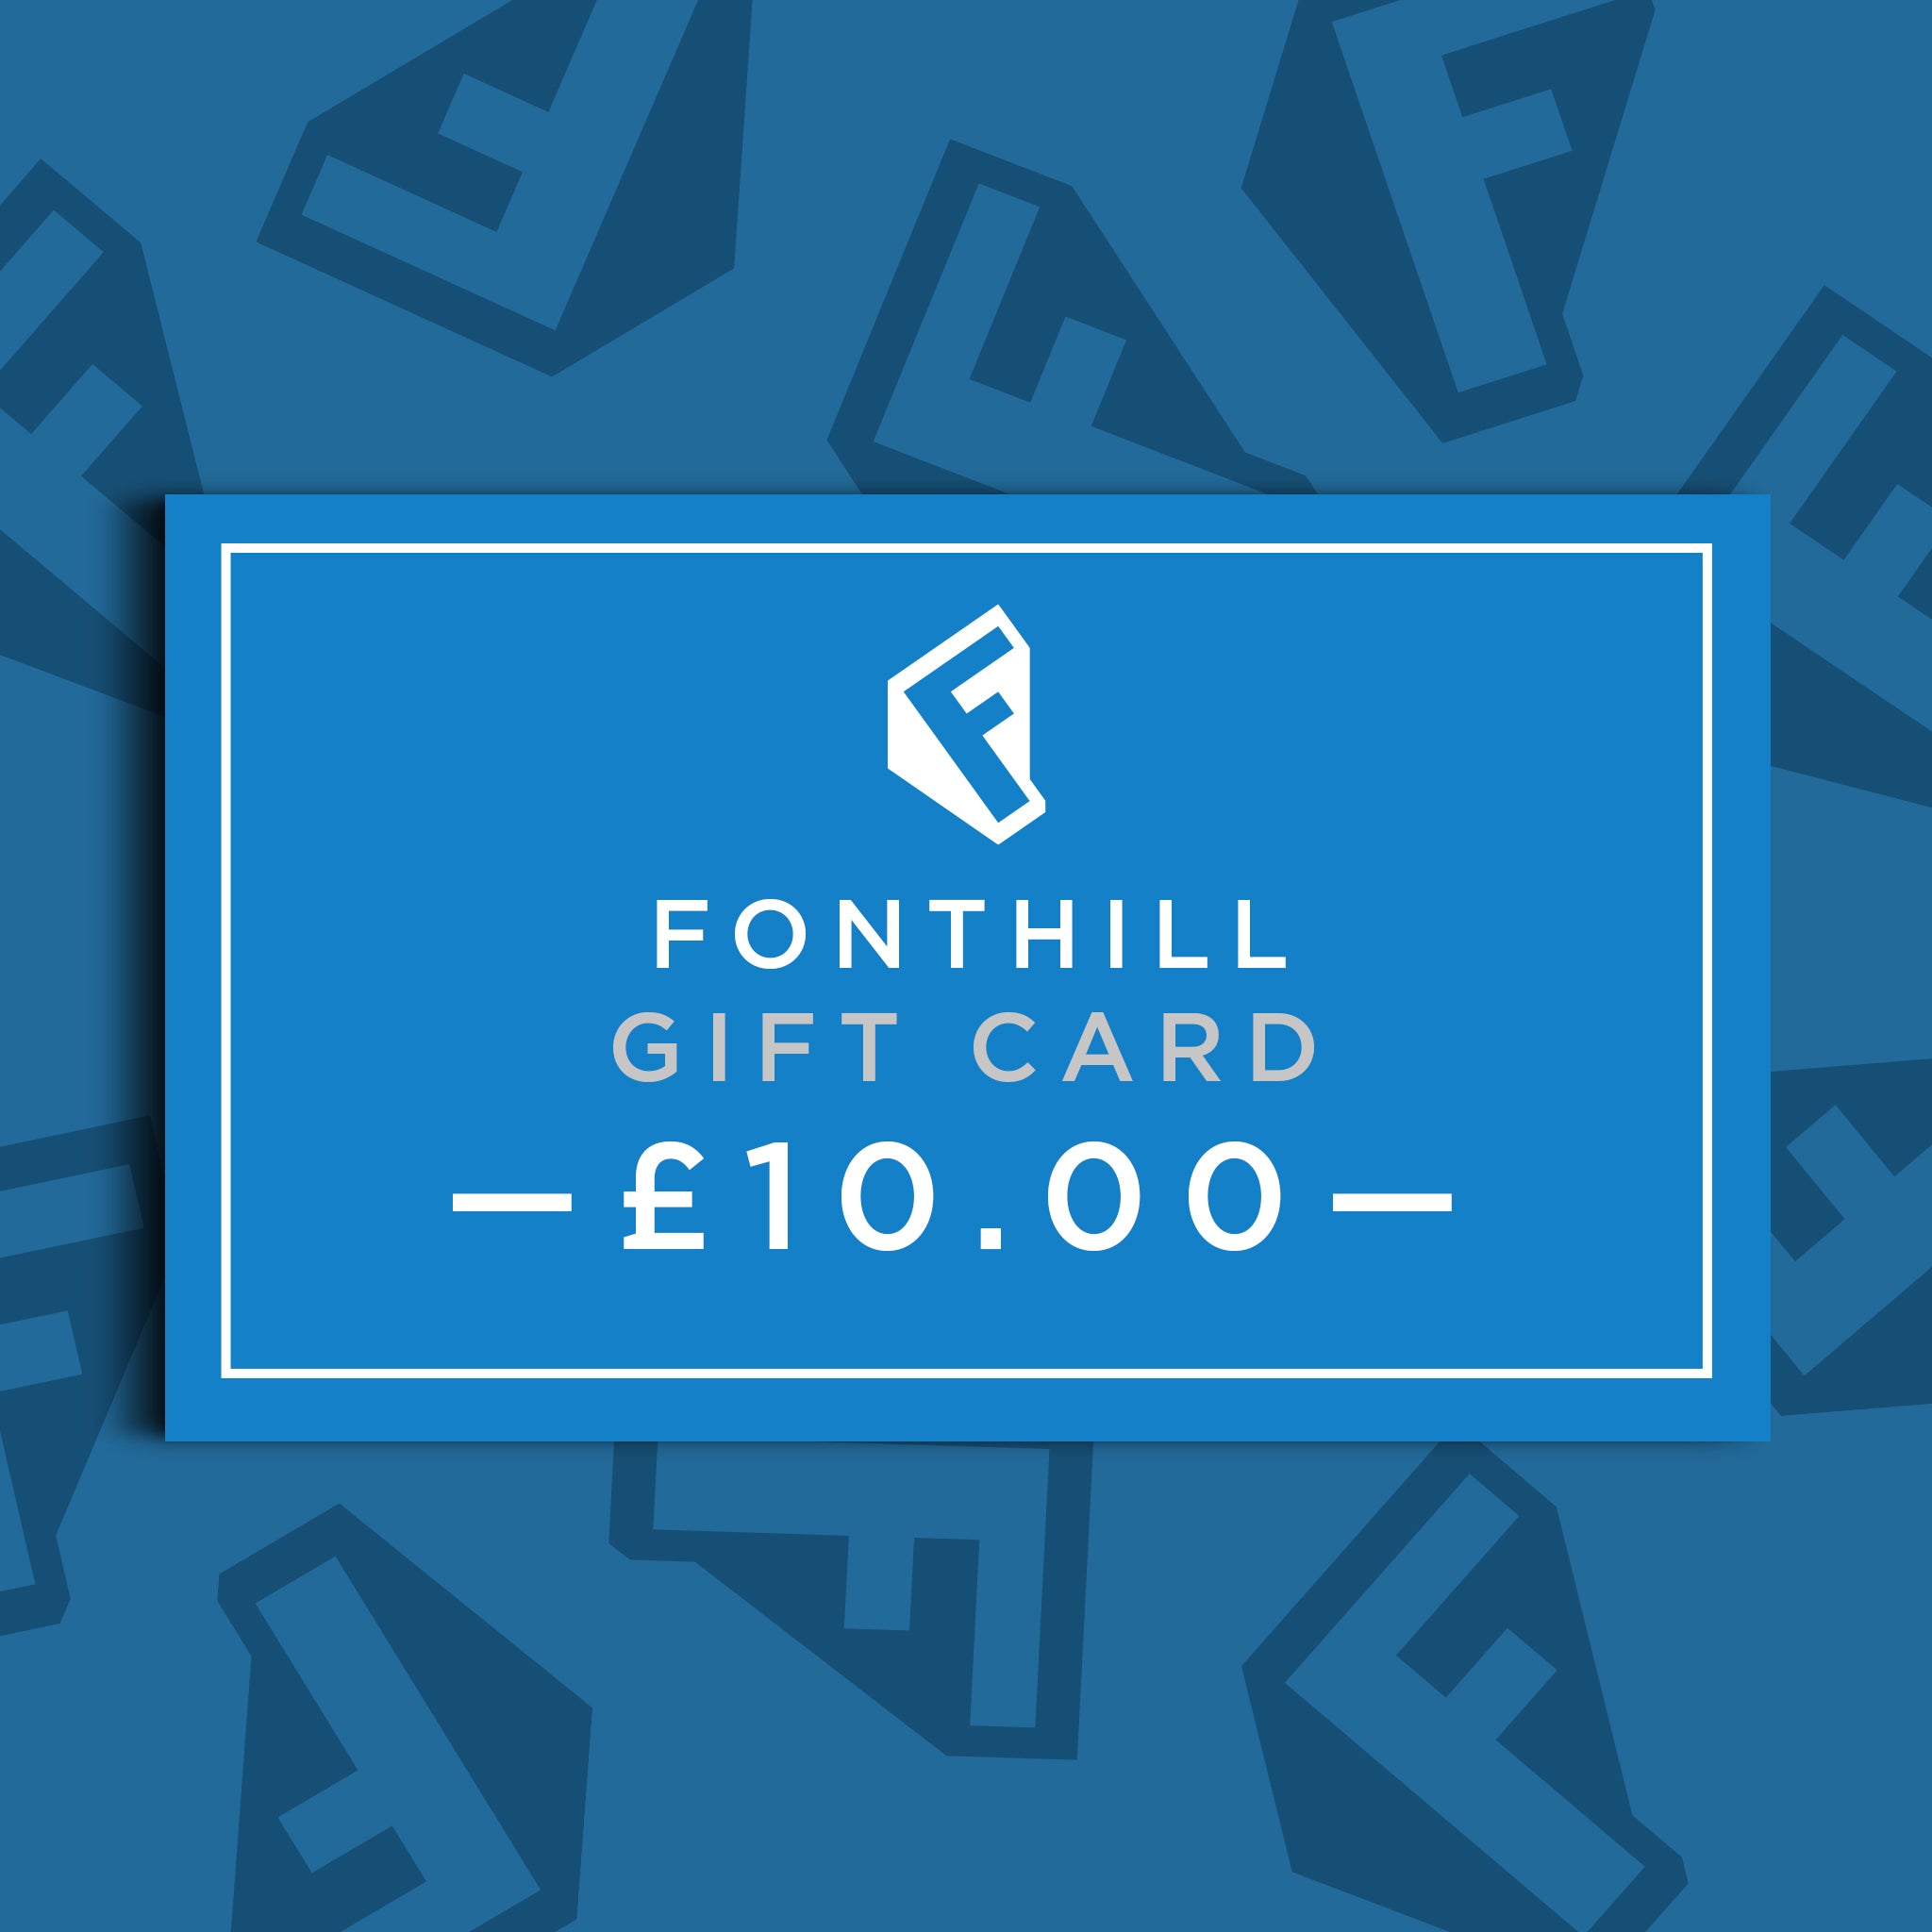 Fonthill Media £10.00 Gift Card